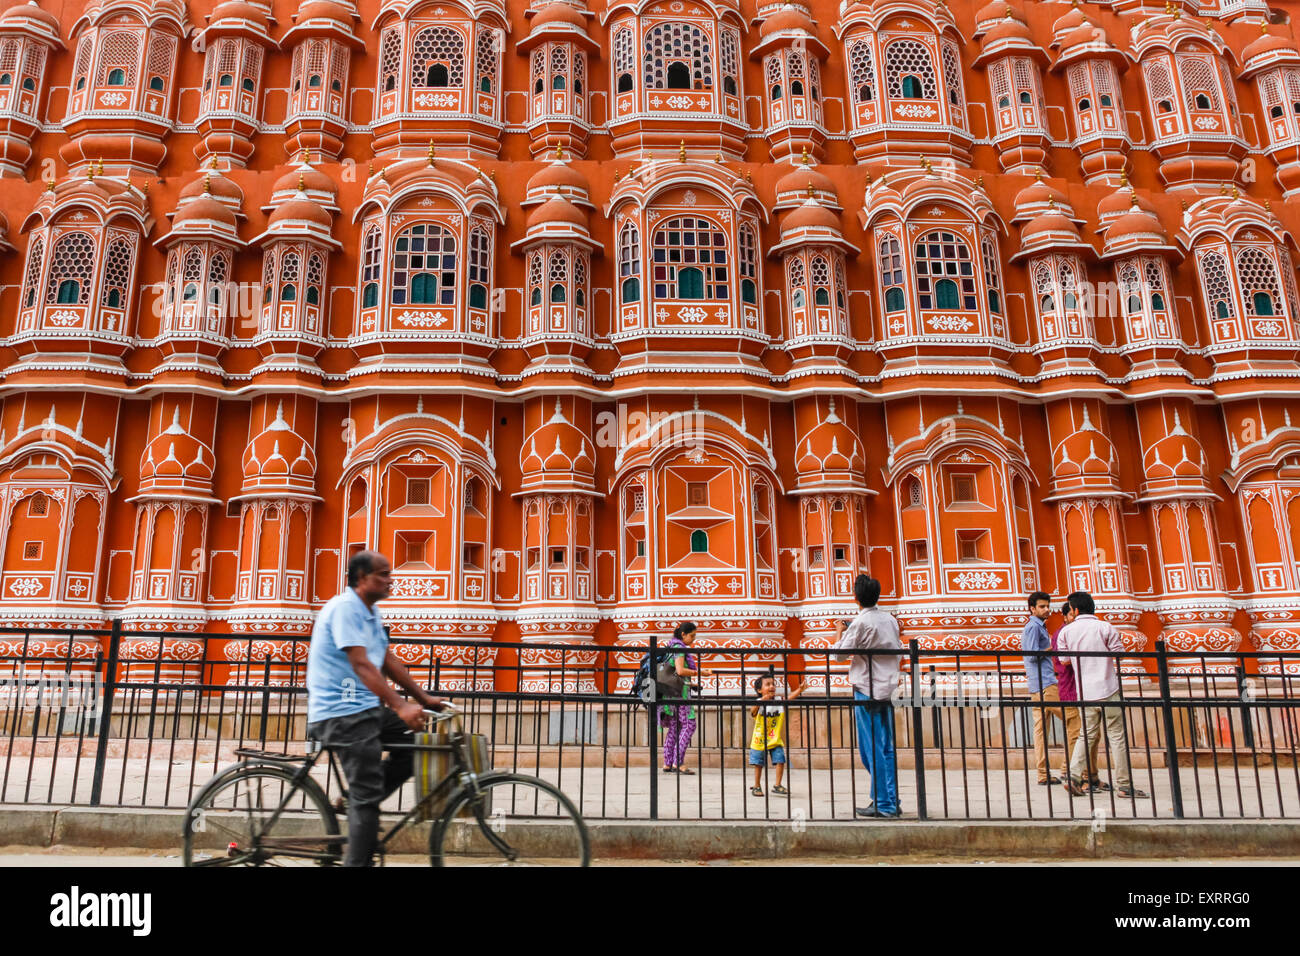 Ein Radfahrer bewegt sich auf der Straße neben einem Fußgängerweg, wo Touristen Freizeit in Hawa Mahal. Jaipur, Rajasthan, Indien. Stockfoto